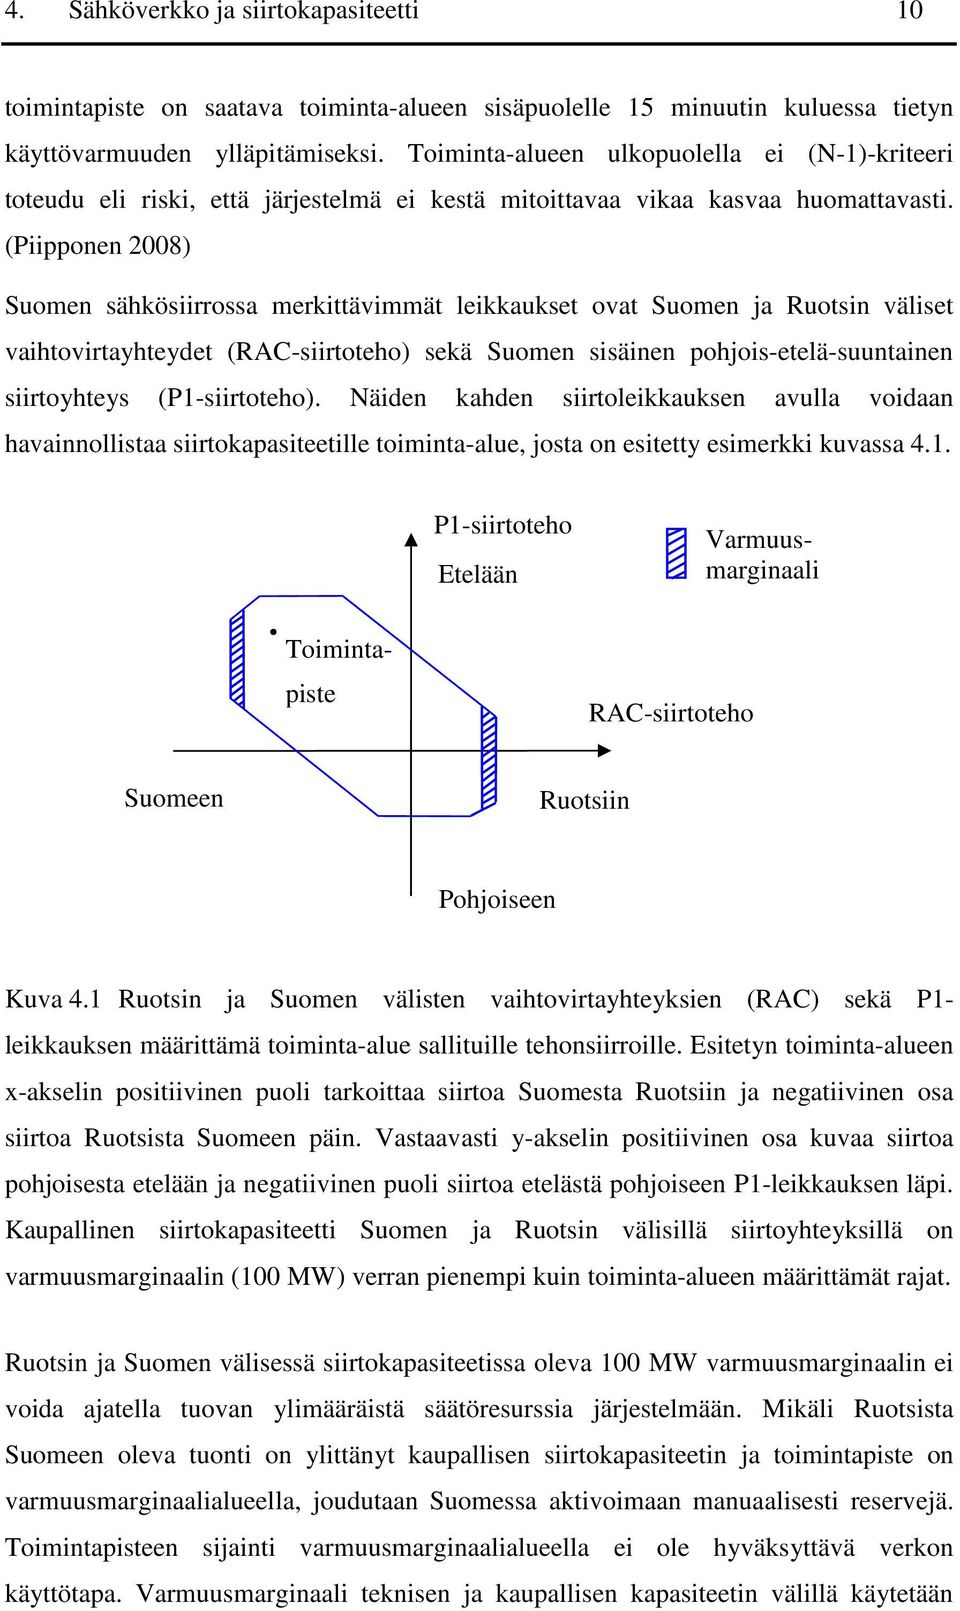 (Piipponen 2008) Suomen sähkösiirrossa merkittävimmät leikkaukset ovat Suomen ja Ruotsin väliset vaihtovirtayhteydet (RAC-siirtoteho) sekä Suomen sisäinen pohjois-etelä-suuntainen siirtoyhteys